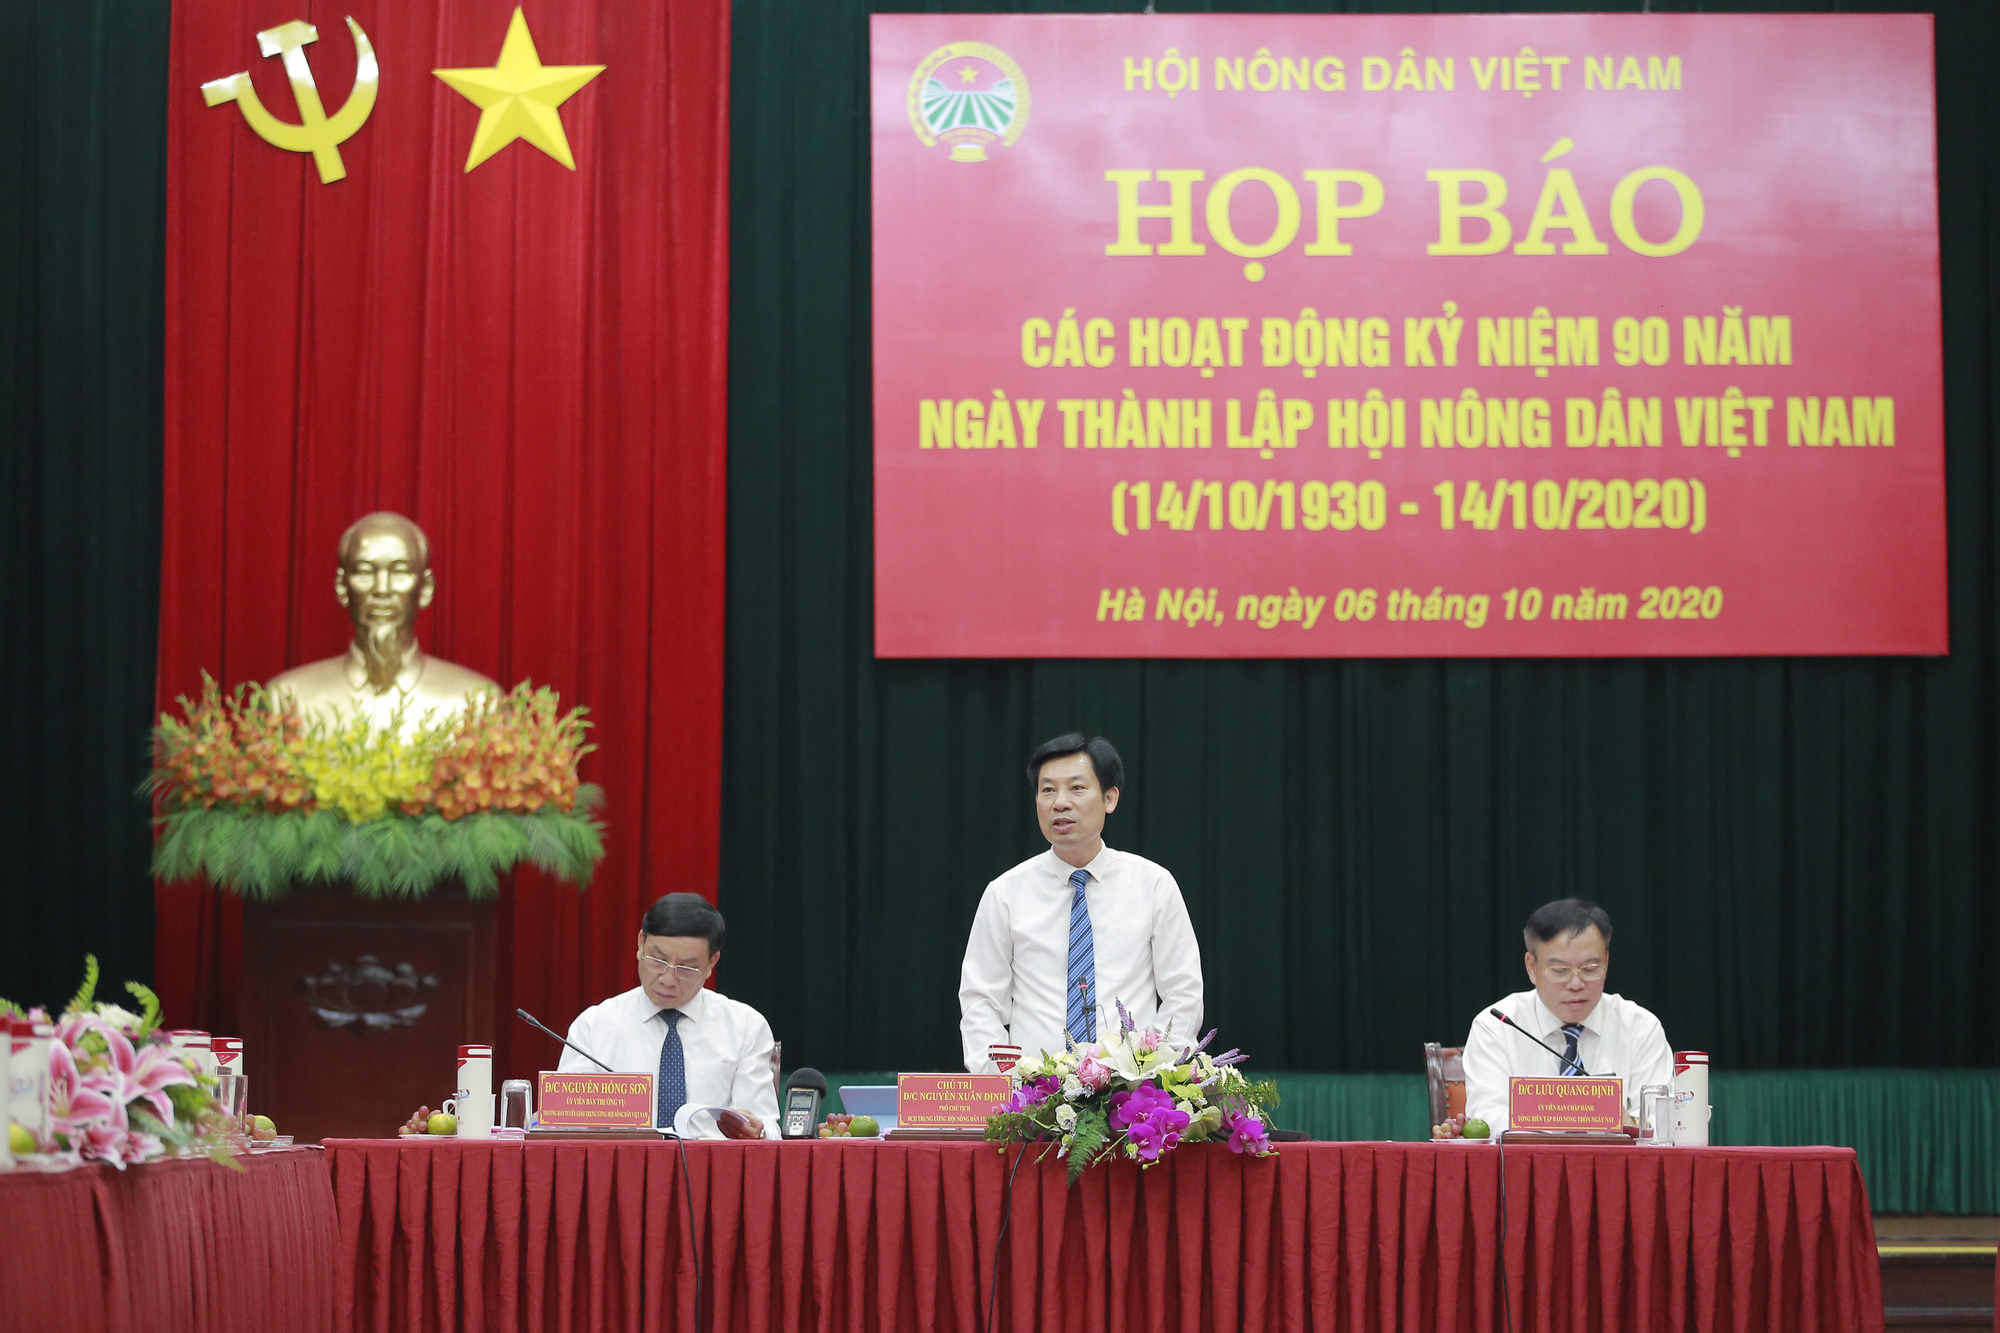 Họp báo các hoạt động kỷ niệm 90 năm thành lập Hội Nông dân Việt Nam - Ảnh 3.